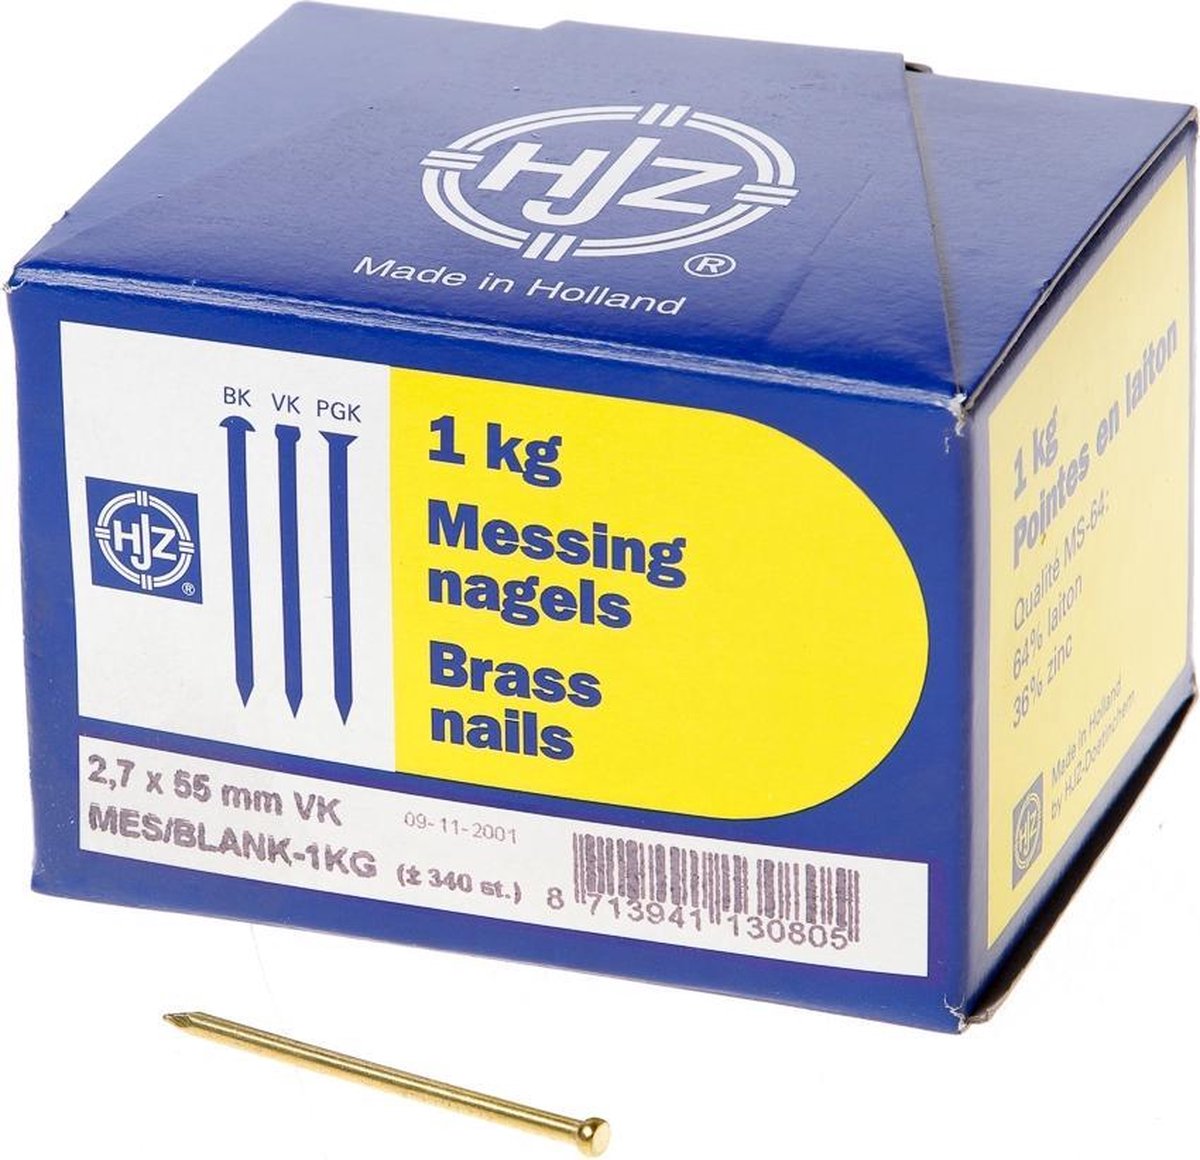 Hjz Messing nagels verloren kop 2.7 x 55mm 1kg